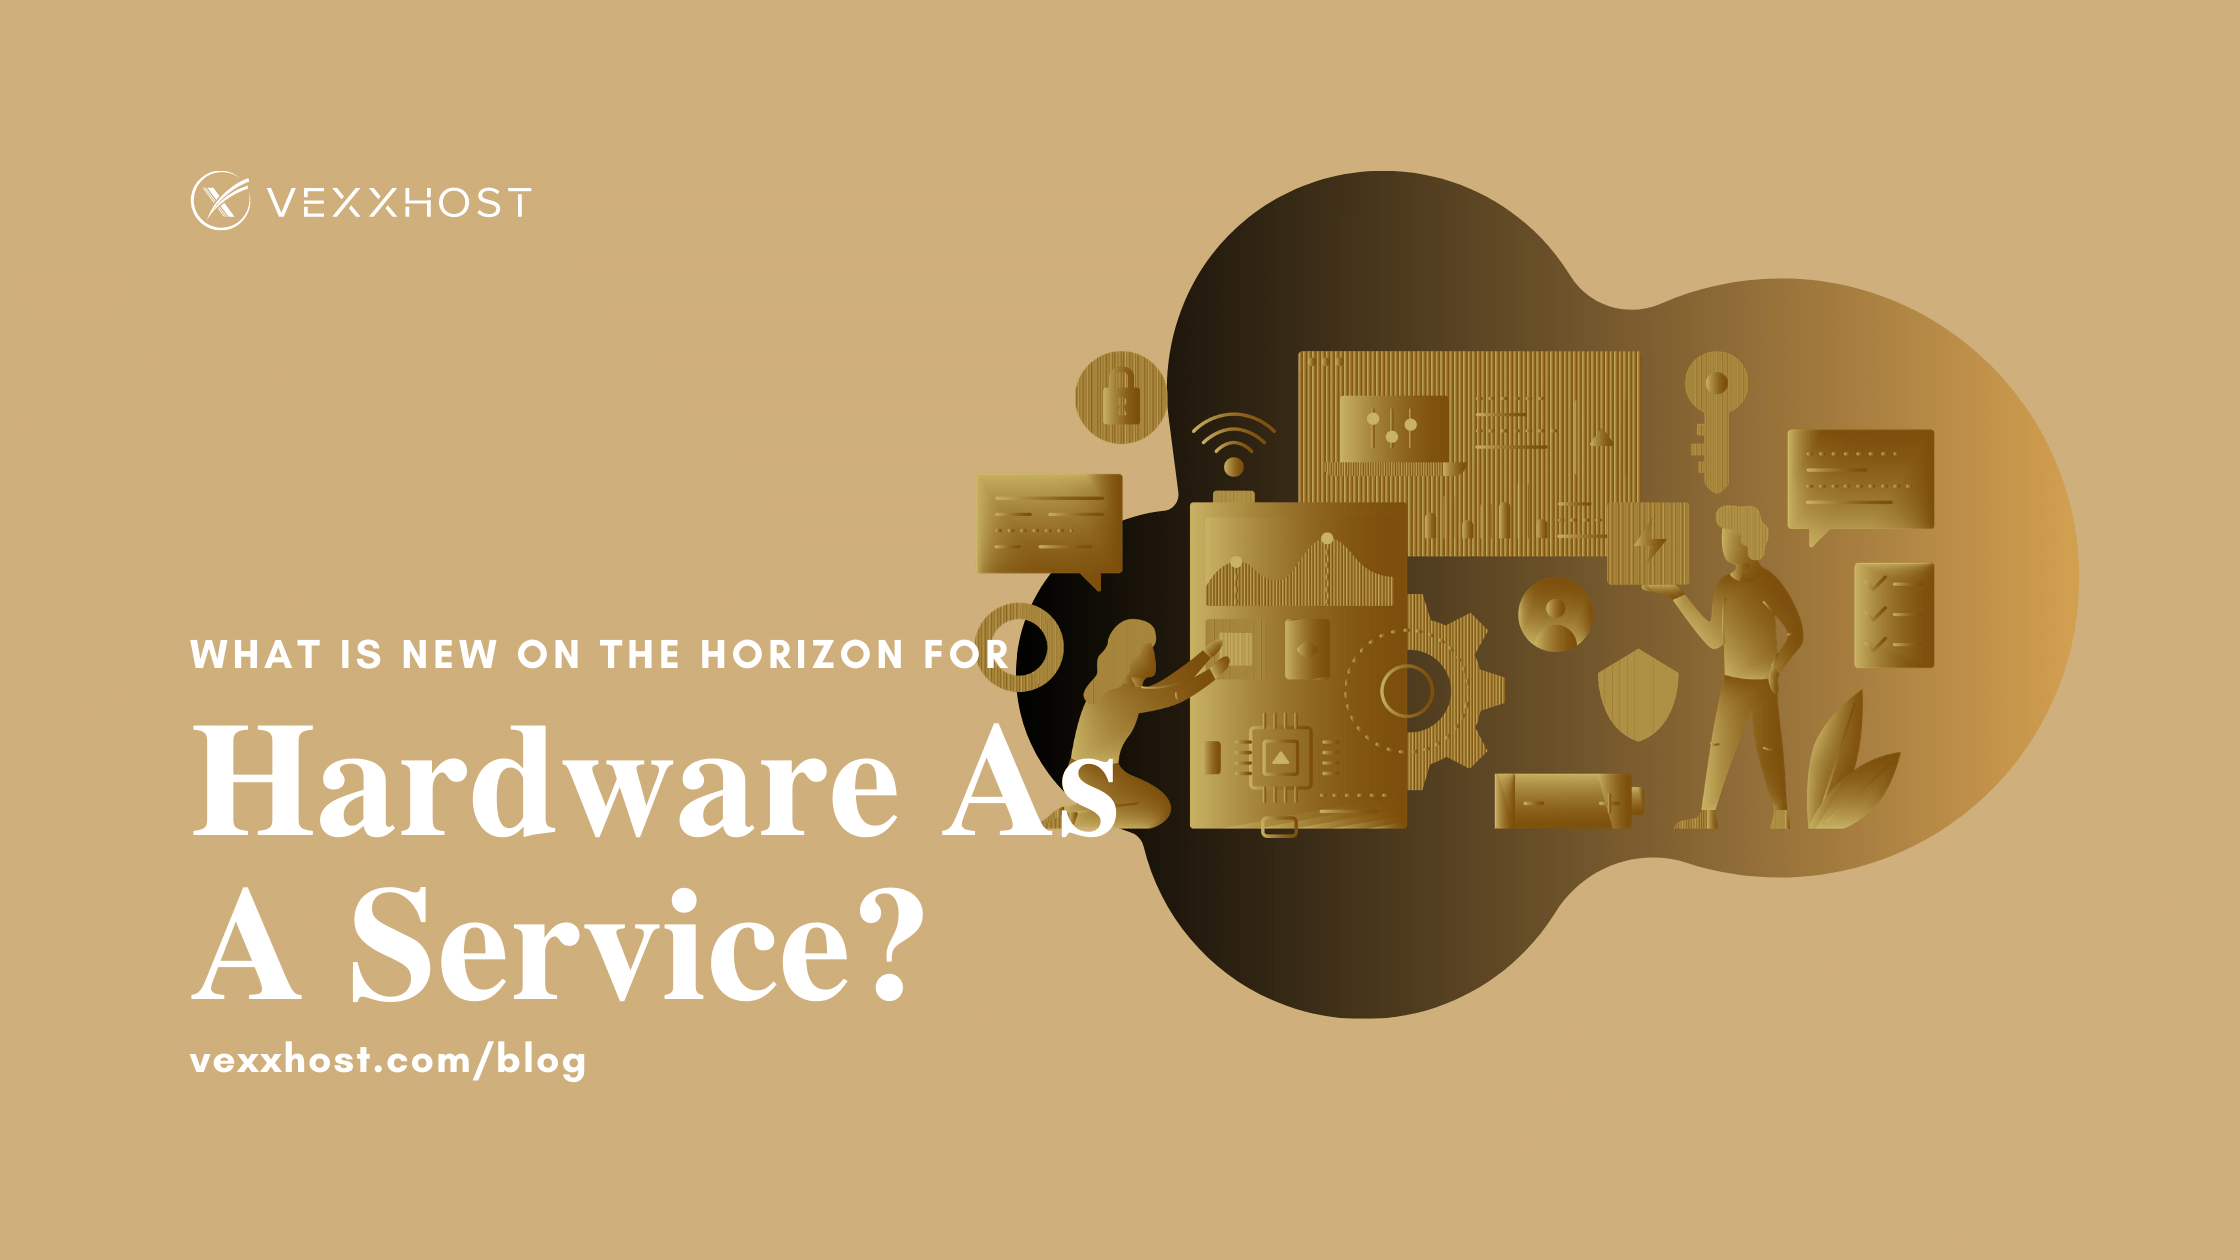 hardware-as-a-service-vexxhost-blog-header